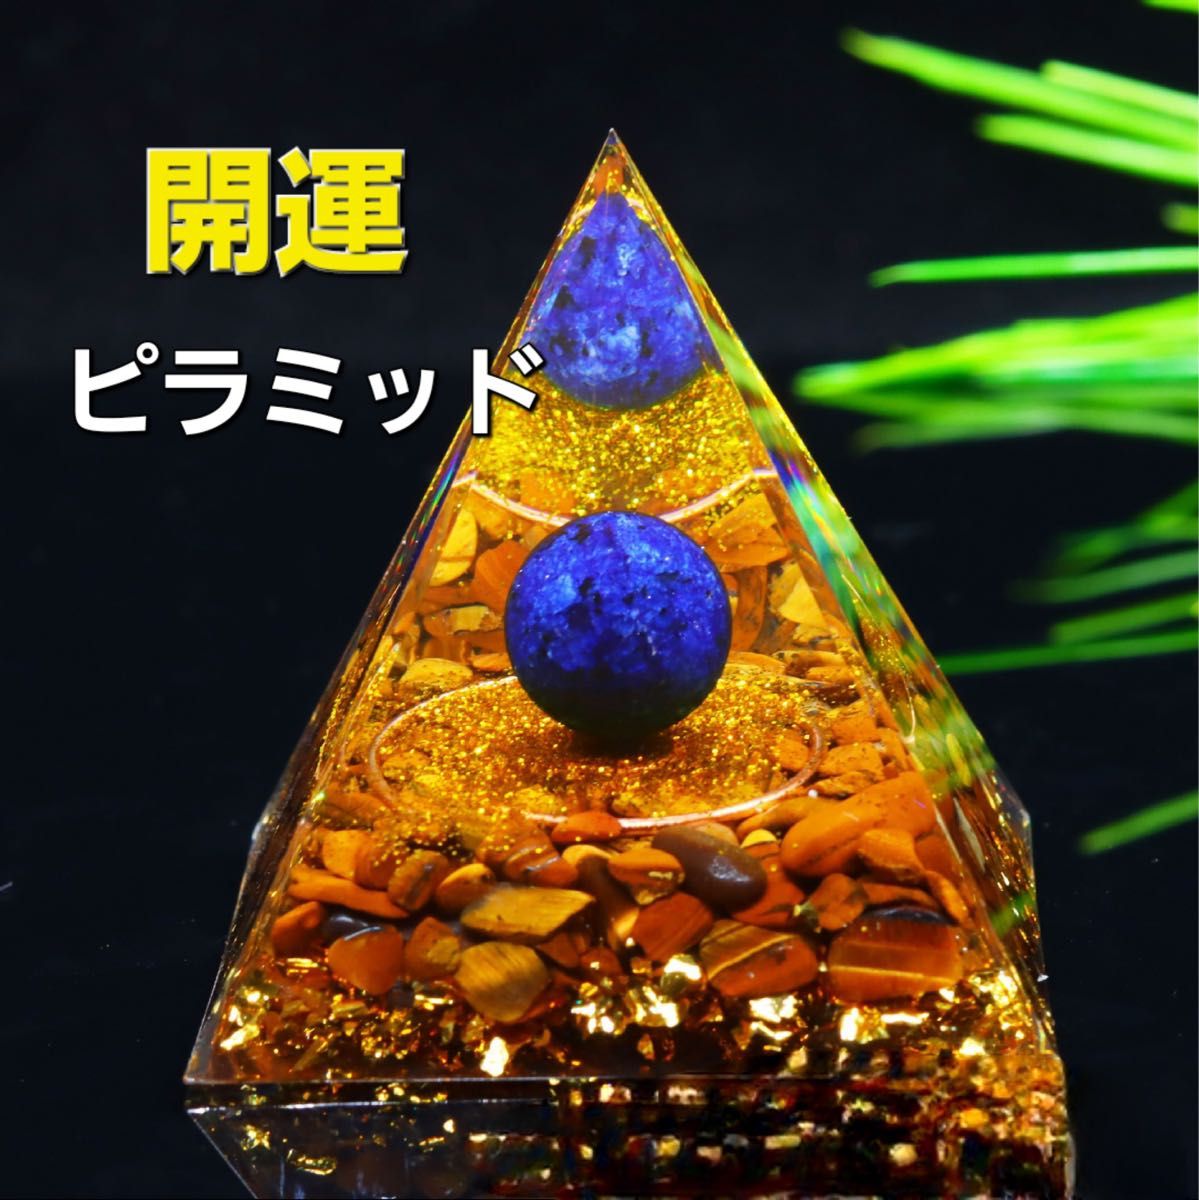 【人気商品】G075 オルゴナイト ピラミッド型 タイガーアイボール オブシディアン 置物 インテリア 浄化